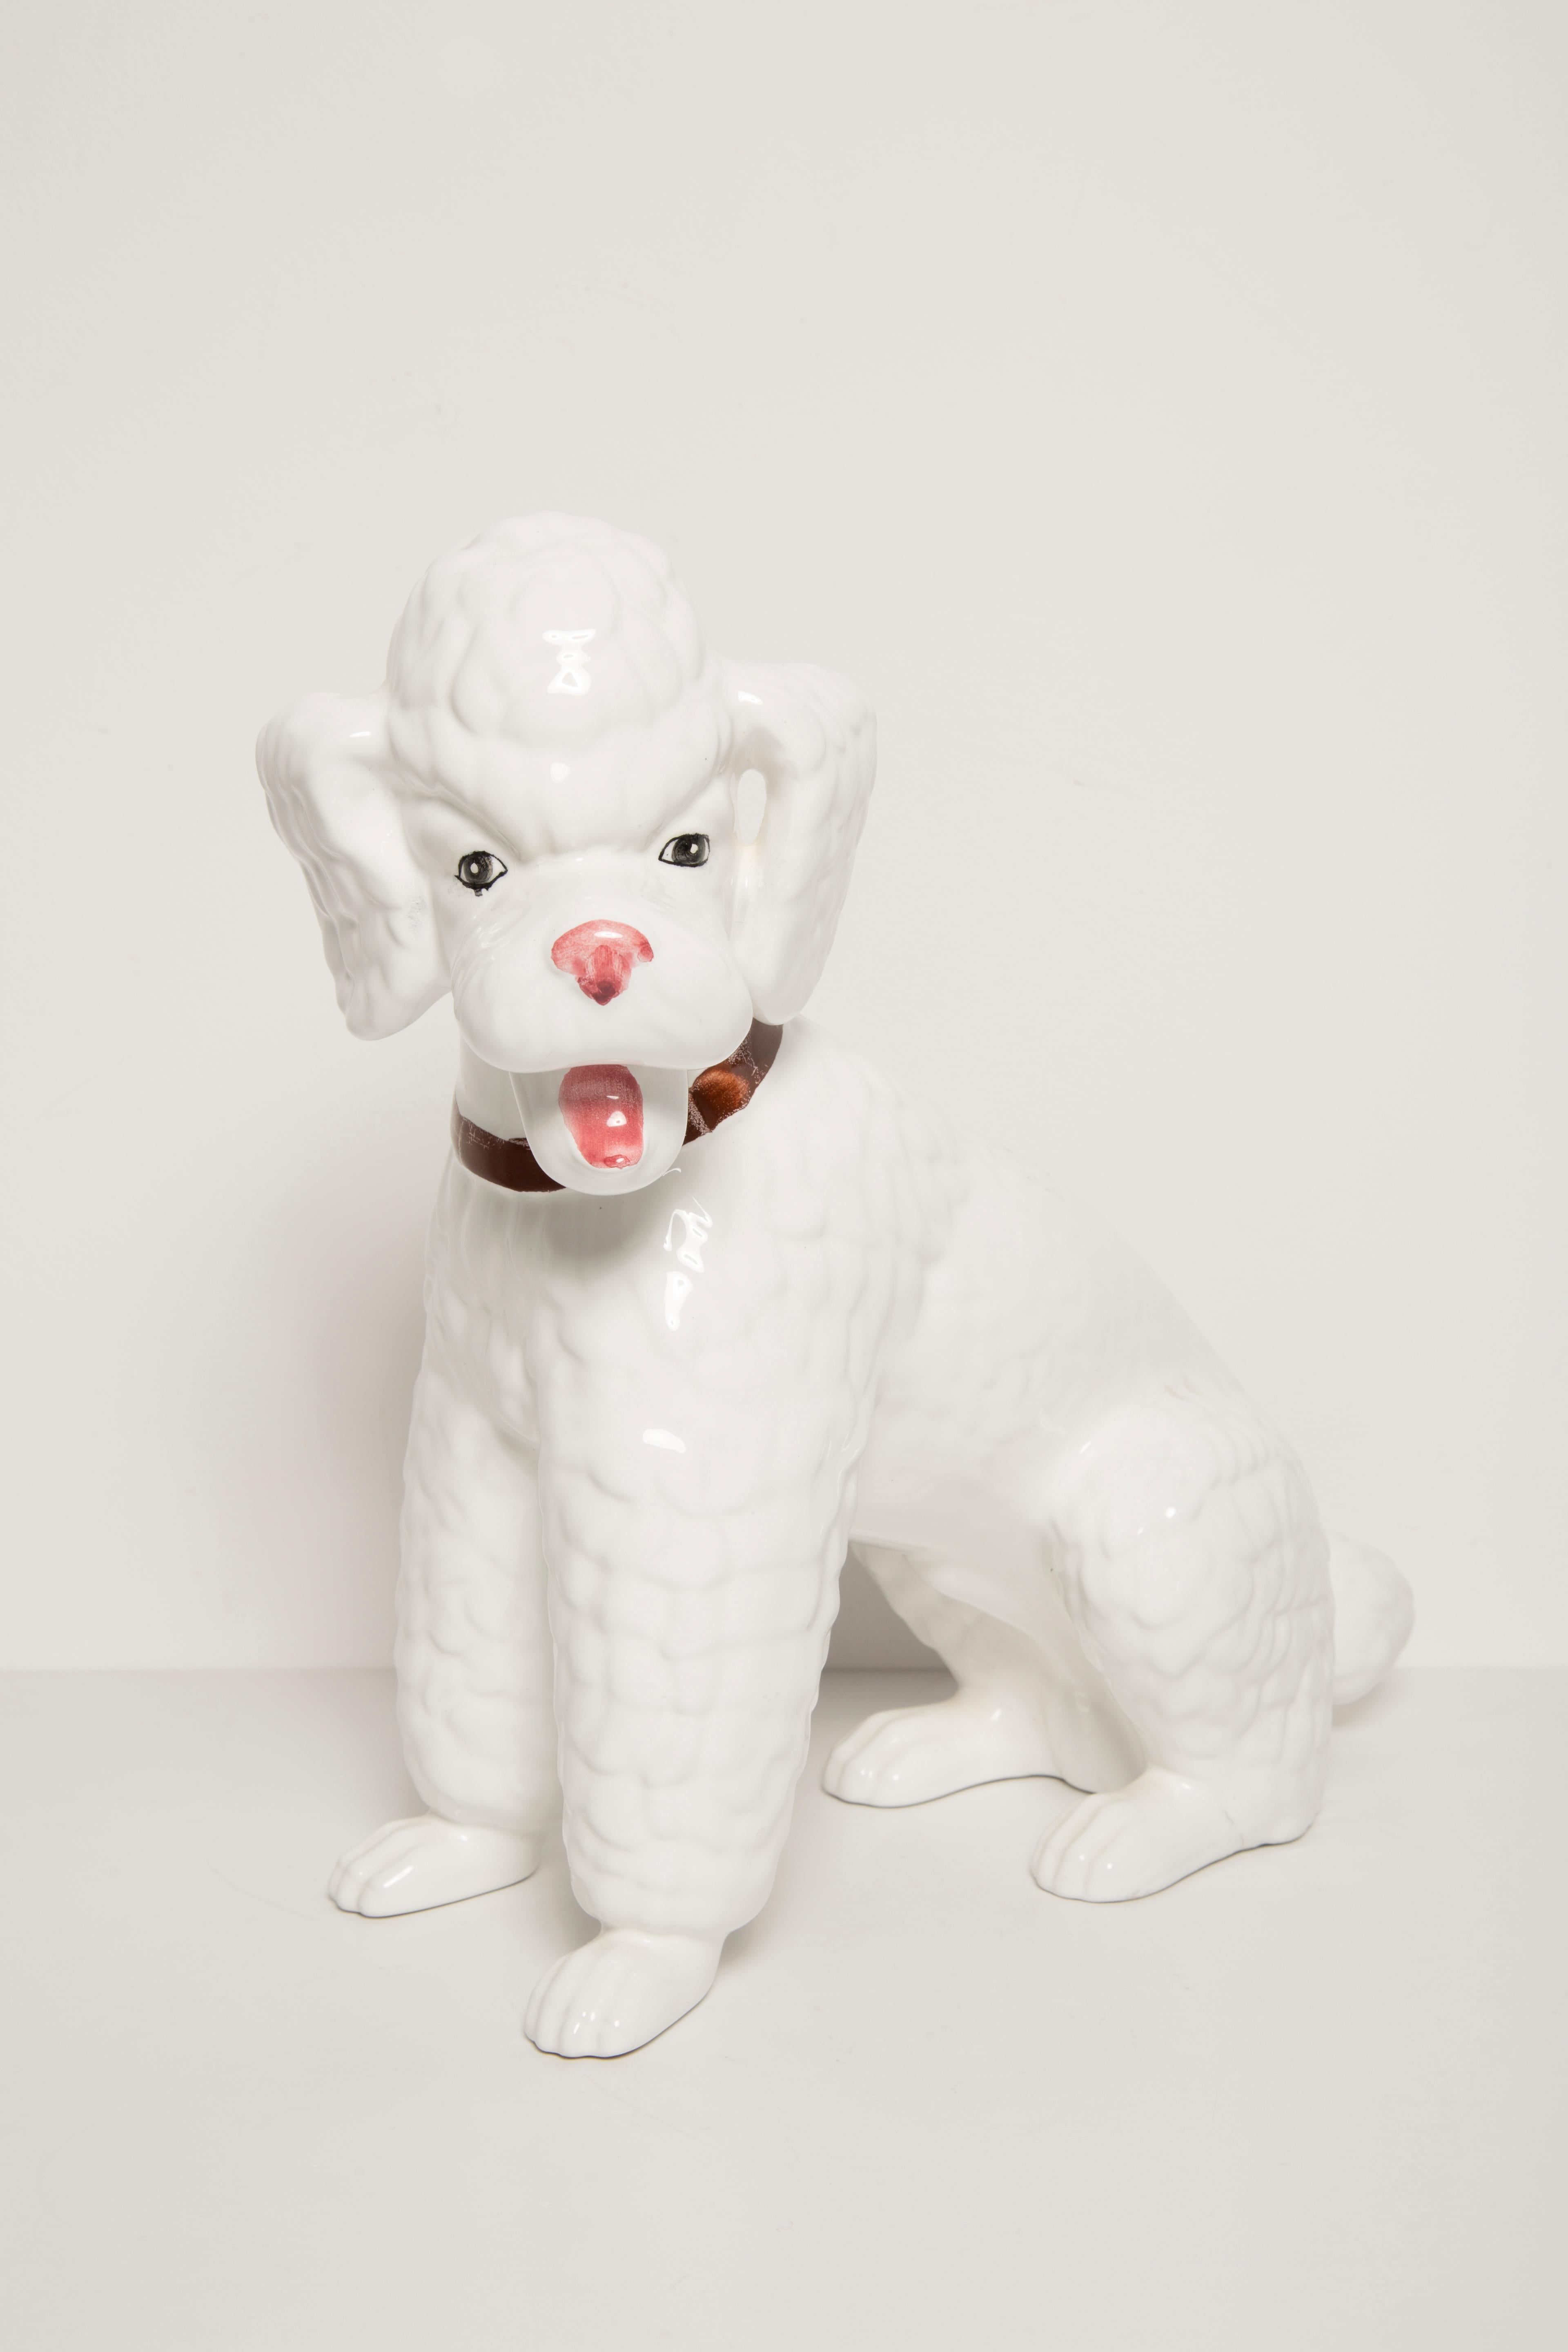 Bemalte Keramik, sehr guter originaler Vintage-Zustand. Keine Schäden oder Risse. Schöne und einzigartige dekorative Skulptur. Big King White Poodle Dog Sculpture wurde in Italien hergestellt. Nur ein Hund verfügbar.